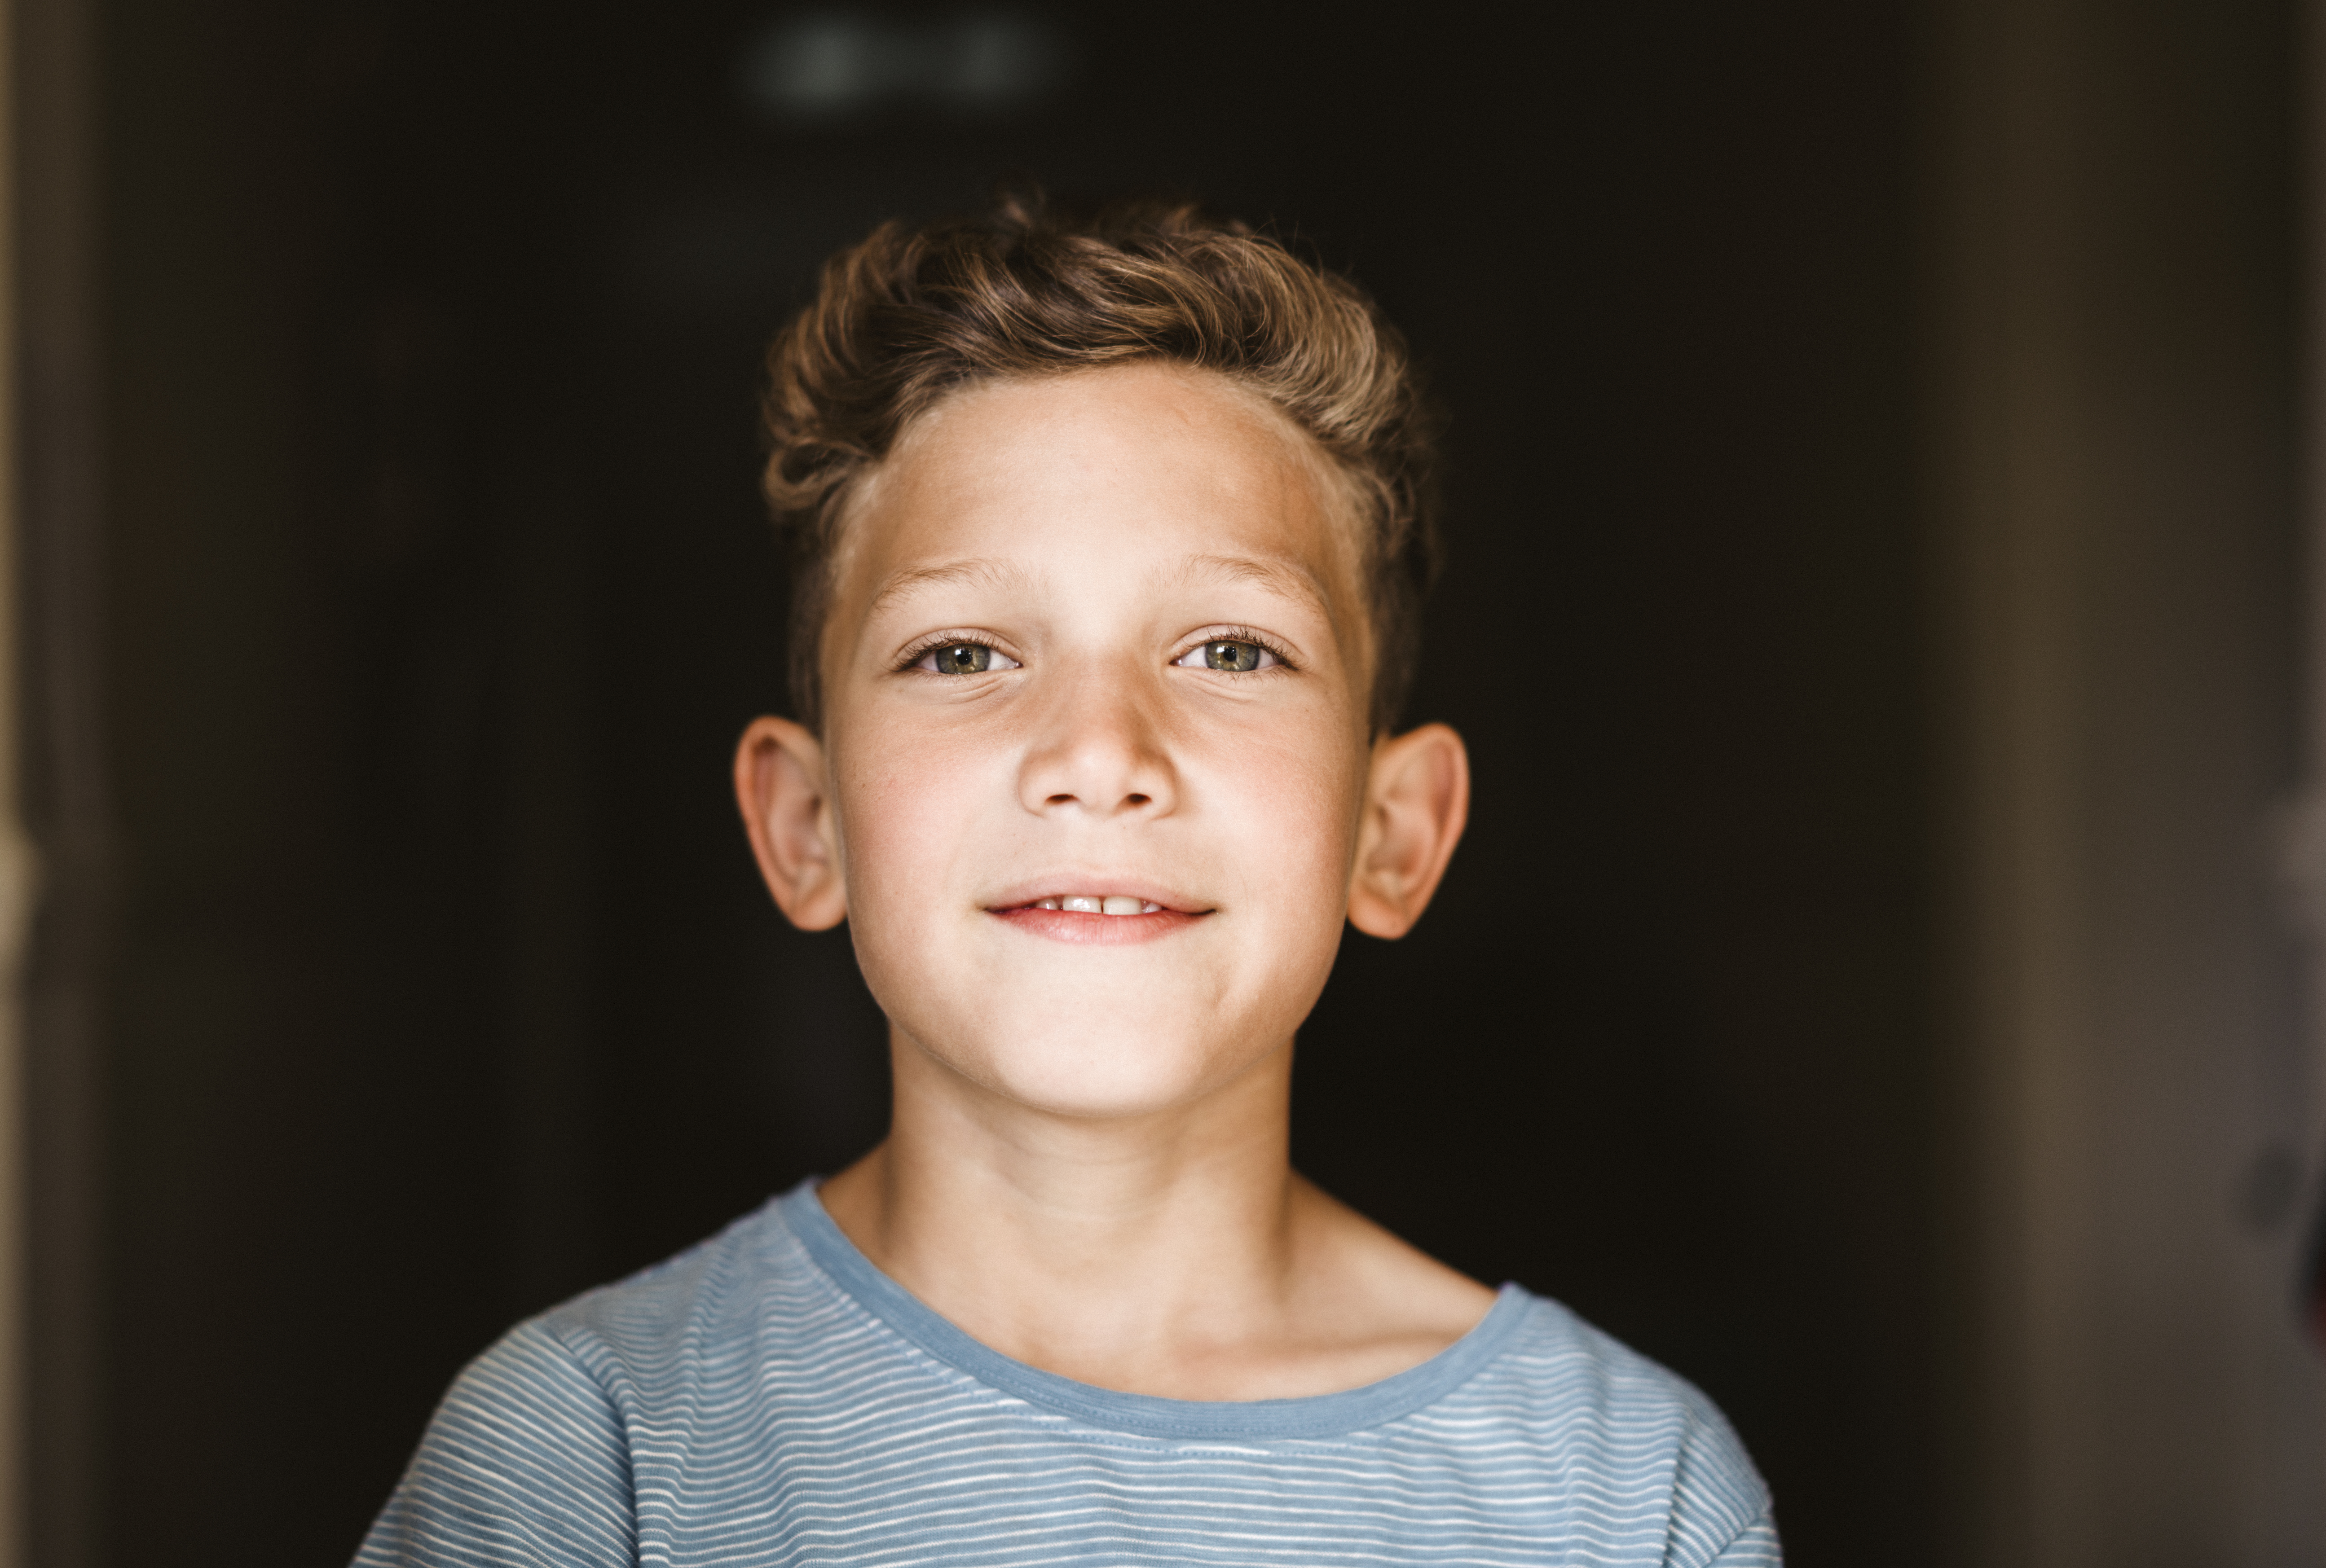 Un jeune garçon souriant | Source : Getty Images